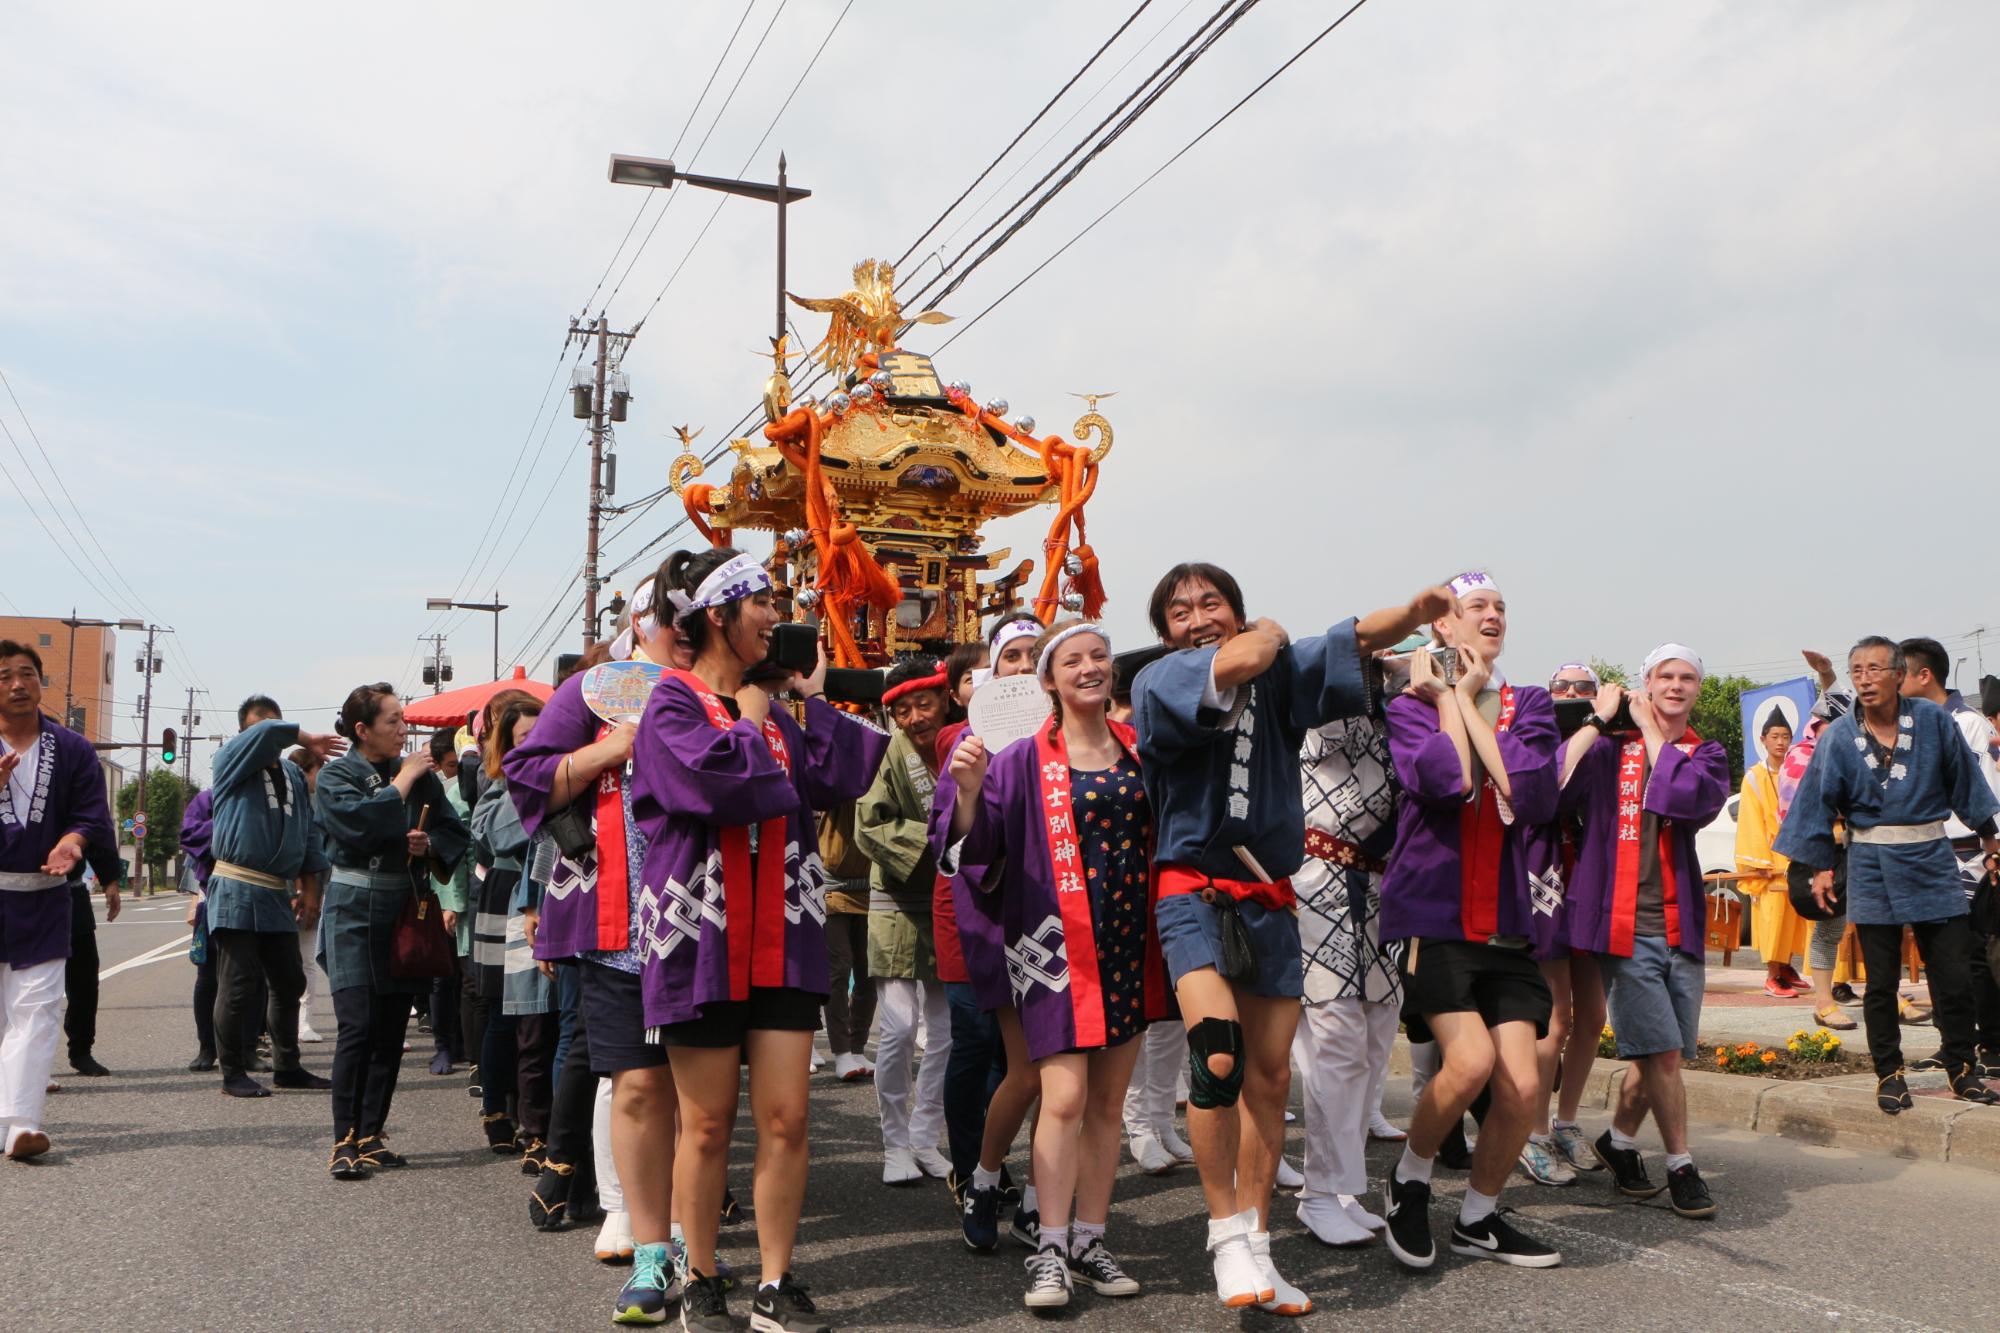 紫色の法被を着た人達が神輿を担ぎながら道路を歩いている写真